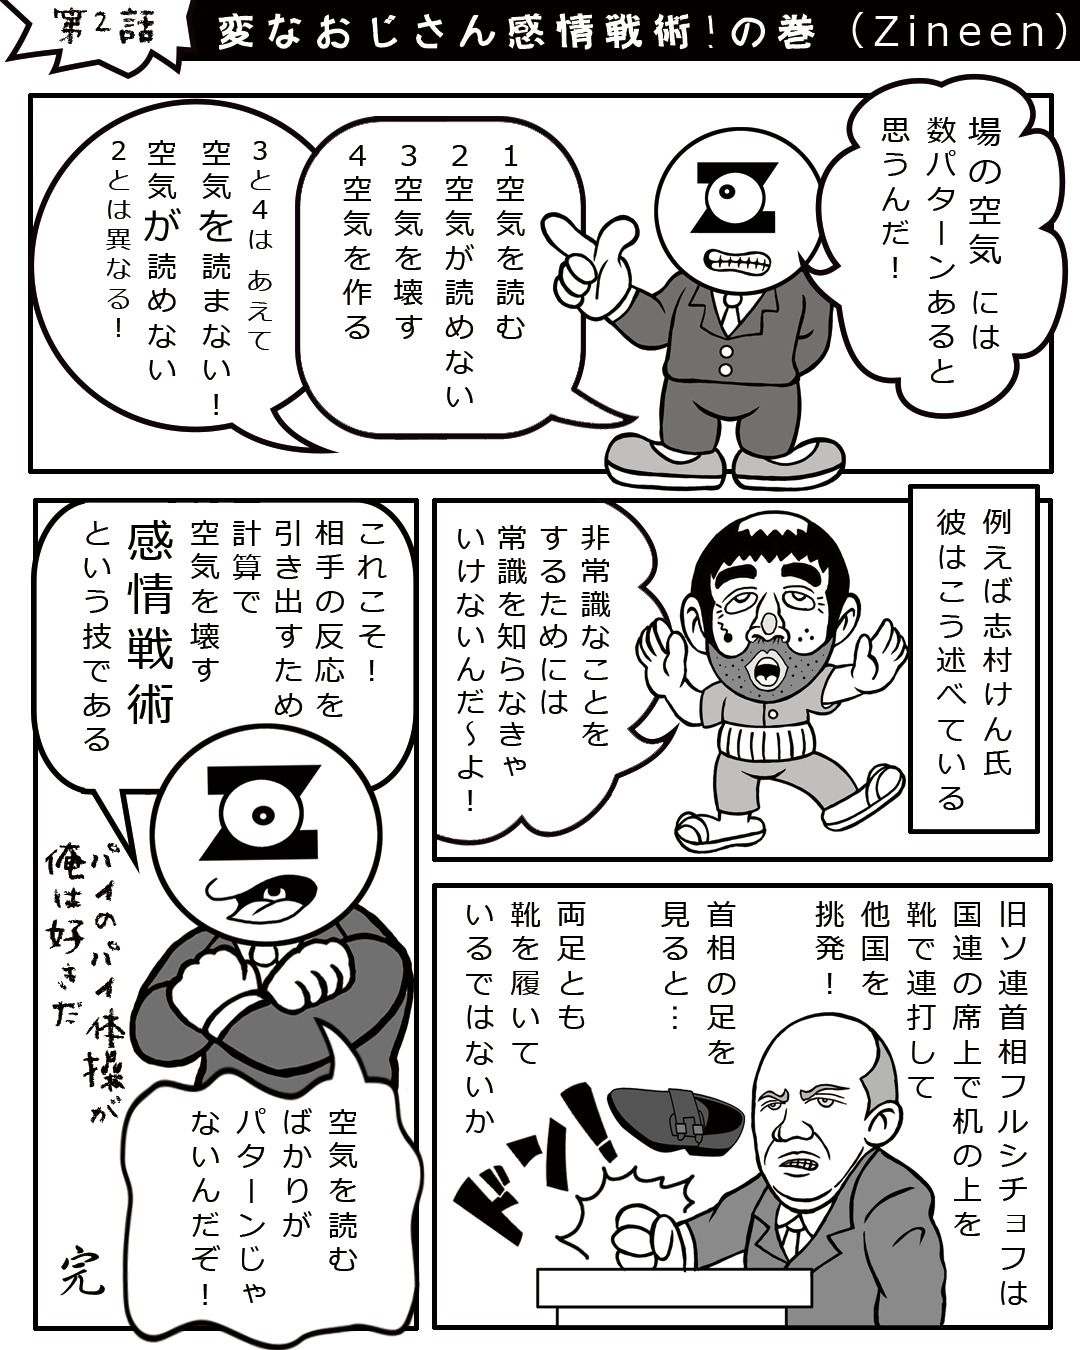 19年1月13日 変なおじさん感情戦術 の巻 コラム漫画エッセイ Zineenジニーン